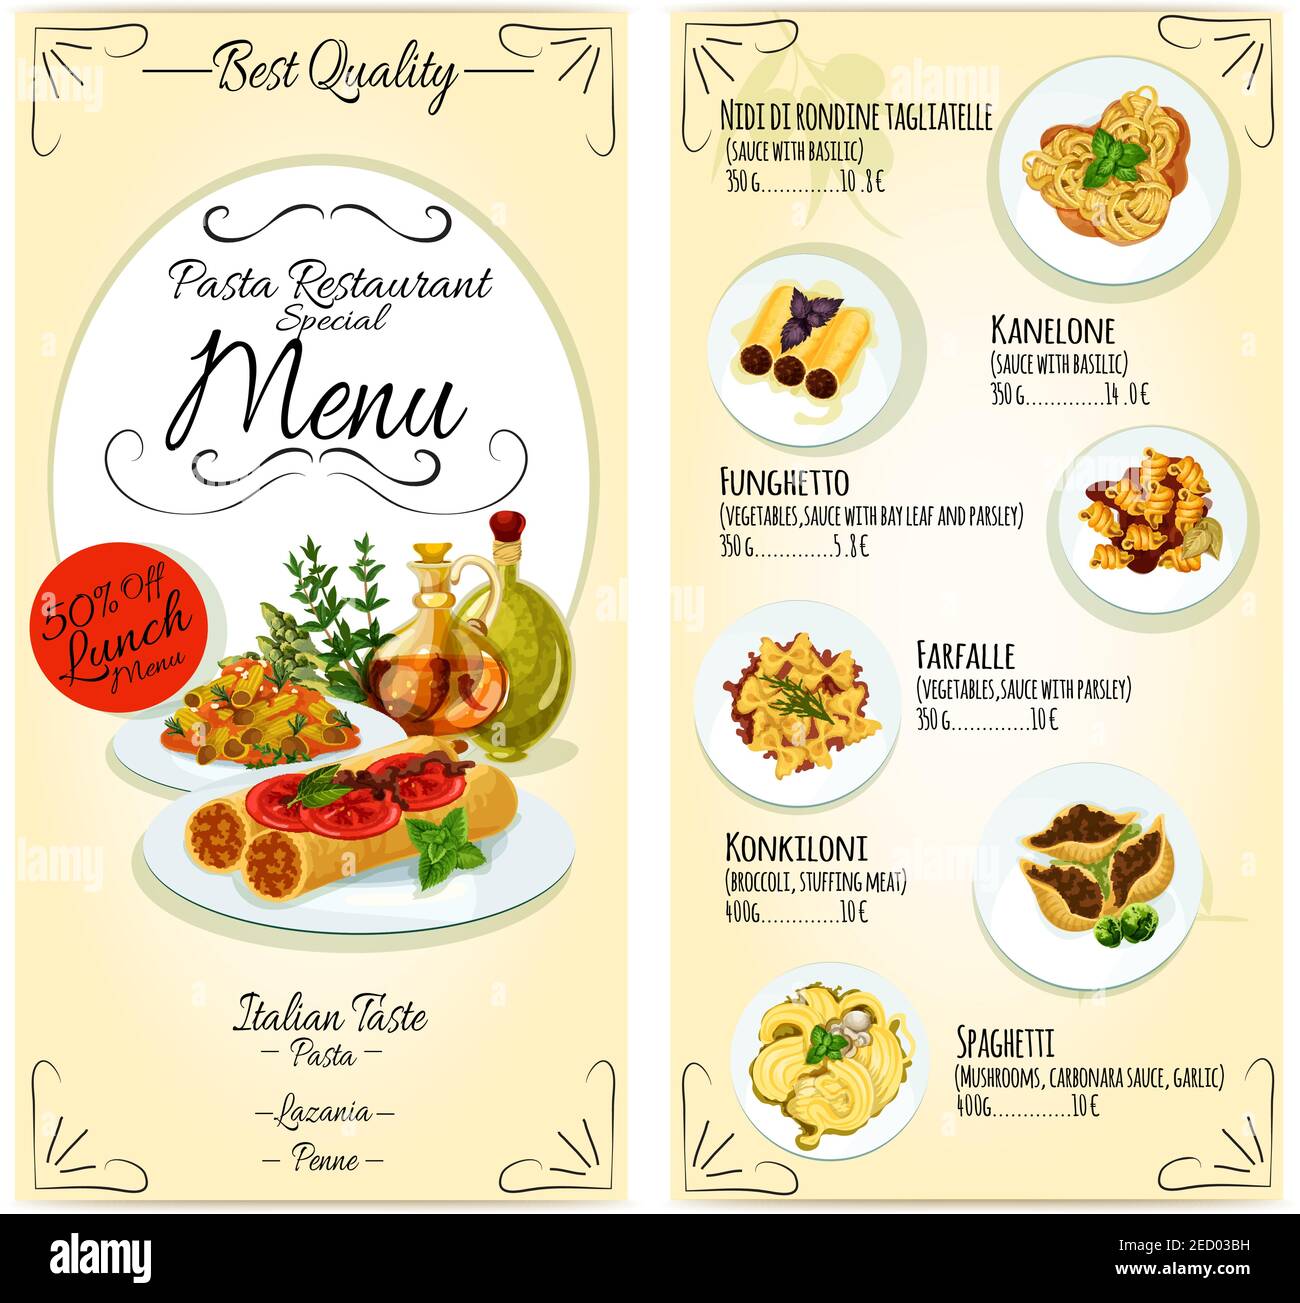 Modello di carta del menu del ristorante di cucina italiana. Icone